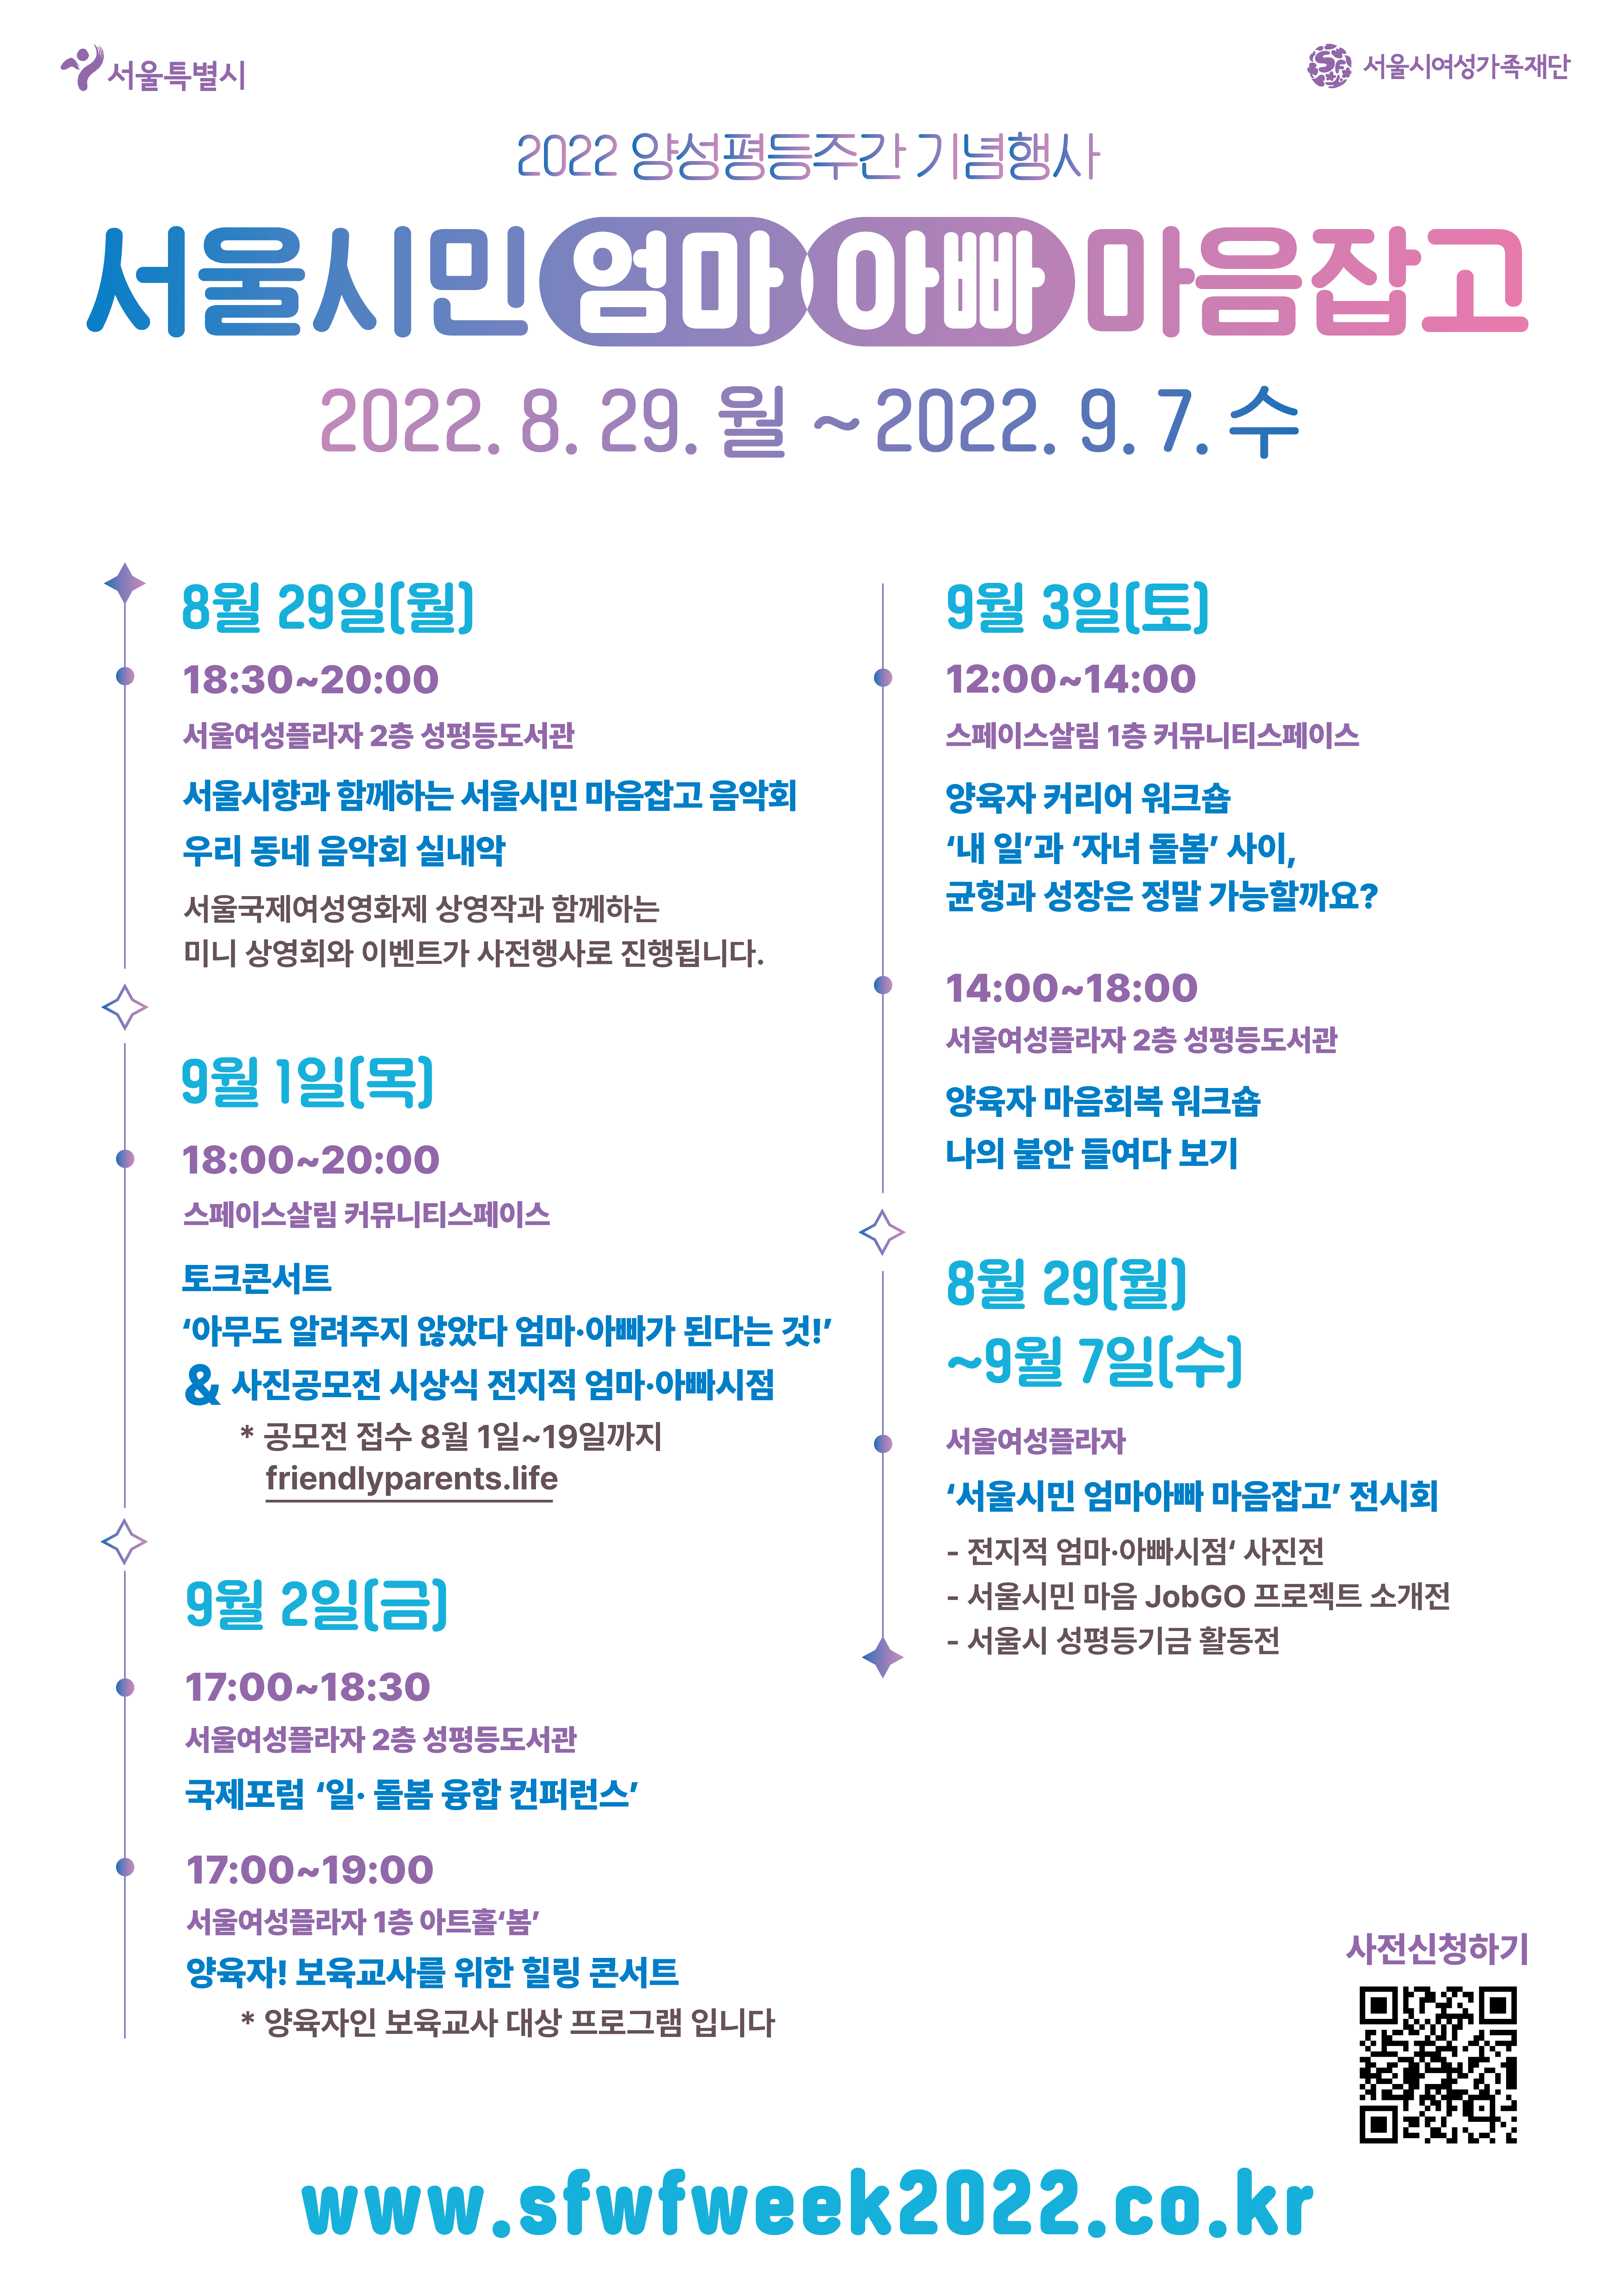 [서울시여성가족재단] 2022 양성평등주간 기념 '서울시민 엄마아빠 마음잡고' 프로그램 진행